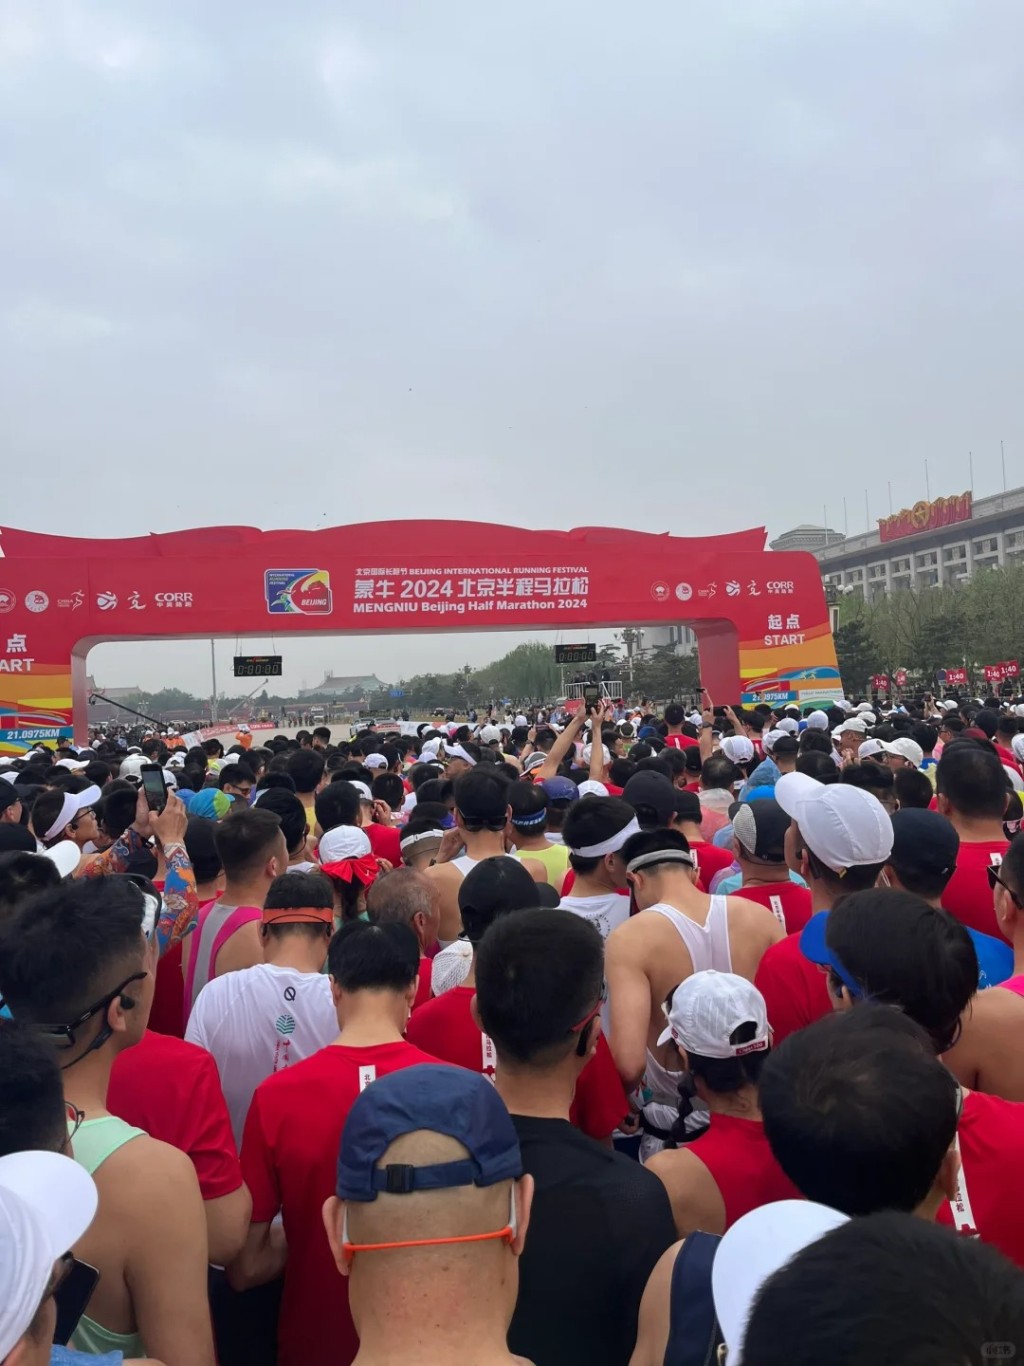 北京半马有逾2万人参加。